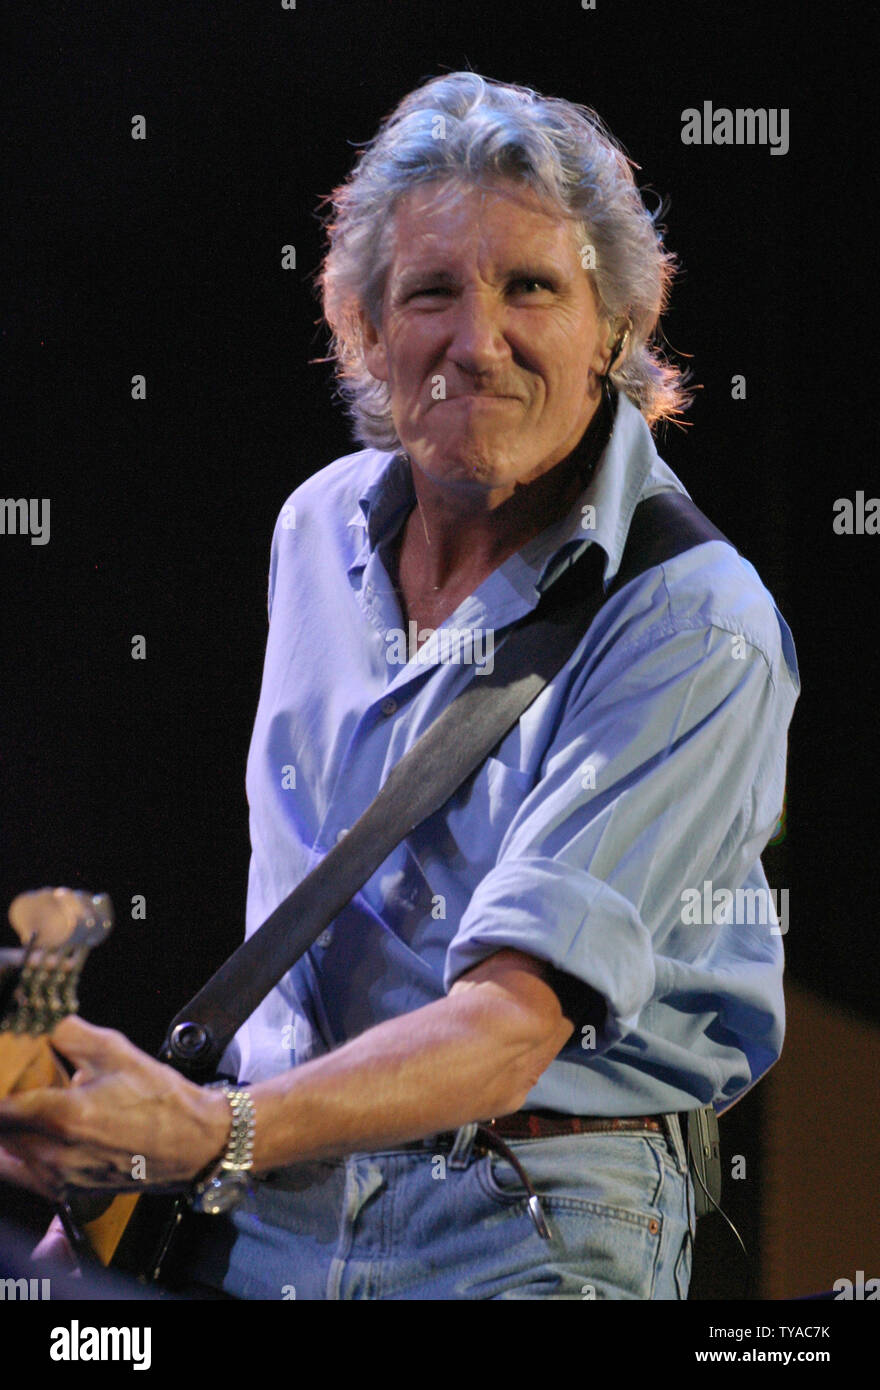 Roger Waters die Band Pink Floyd, vereint zum ersten Mal seit 20 Jahren, führt während des Live8-Konzert im Hyde Park in London, England Juli 2, 2005. Die Konzerte, die gleichzeitig in vielen Städten der Welt, darunter Paris, Berlin, Rom und Philadelphia stattfand, waren dazu gedacht, die Aufmerksamkeit auf die Armut in der Welt vor dem G8-Treffen in der kommenden Woche in Schottland zu nennen. (UPI Foto/David Silpa) Stockfoto